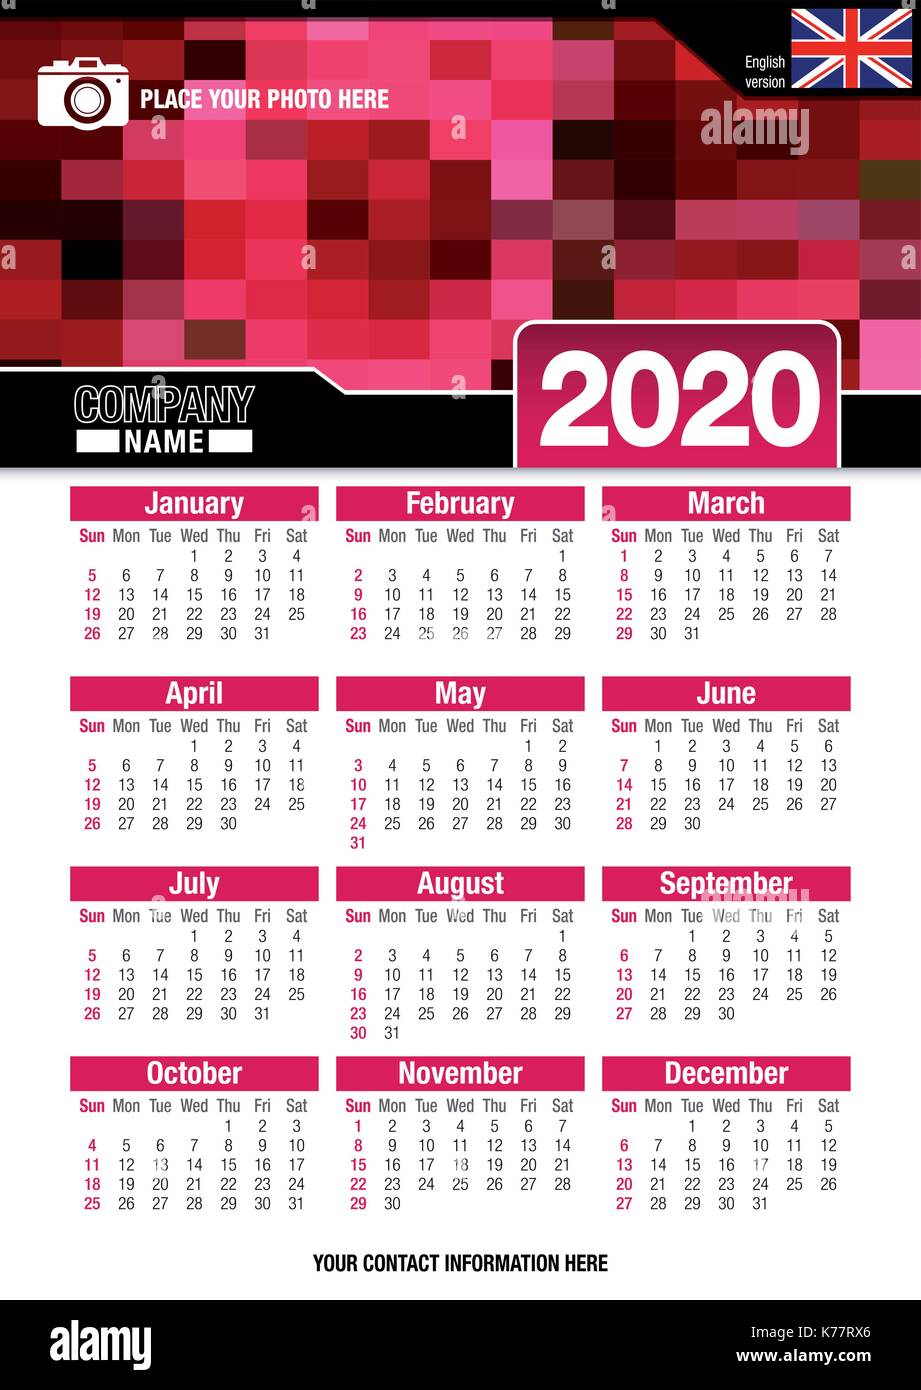 Utile calendario da parete 2020 con design di colori rosso mosaico. Formato A4 verticale. Dimensioni: 210mm x 297mm. Versione Inglese - immagine vettoriale Illustrazione Vettoriale